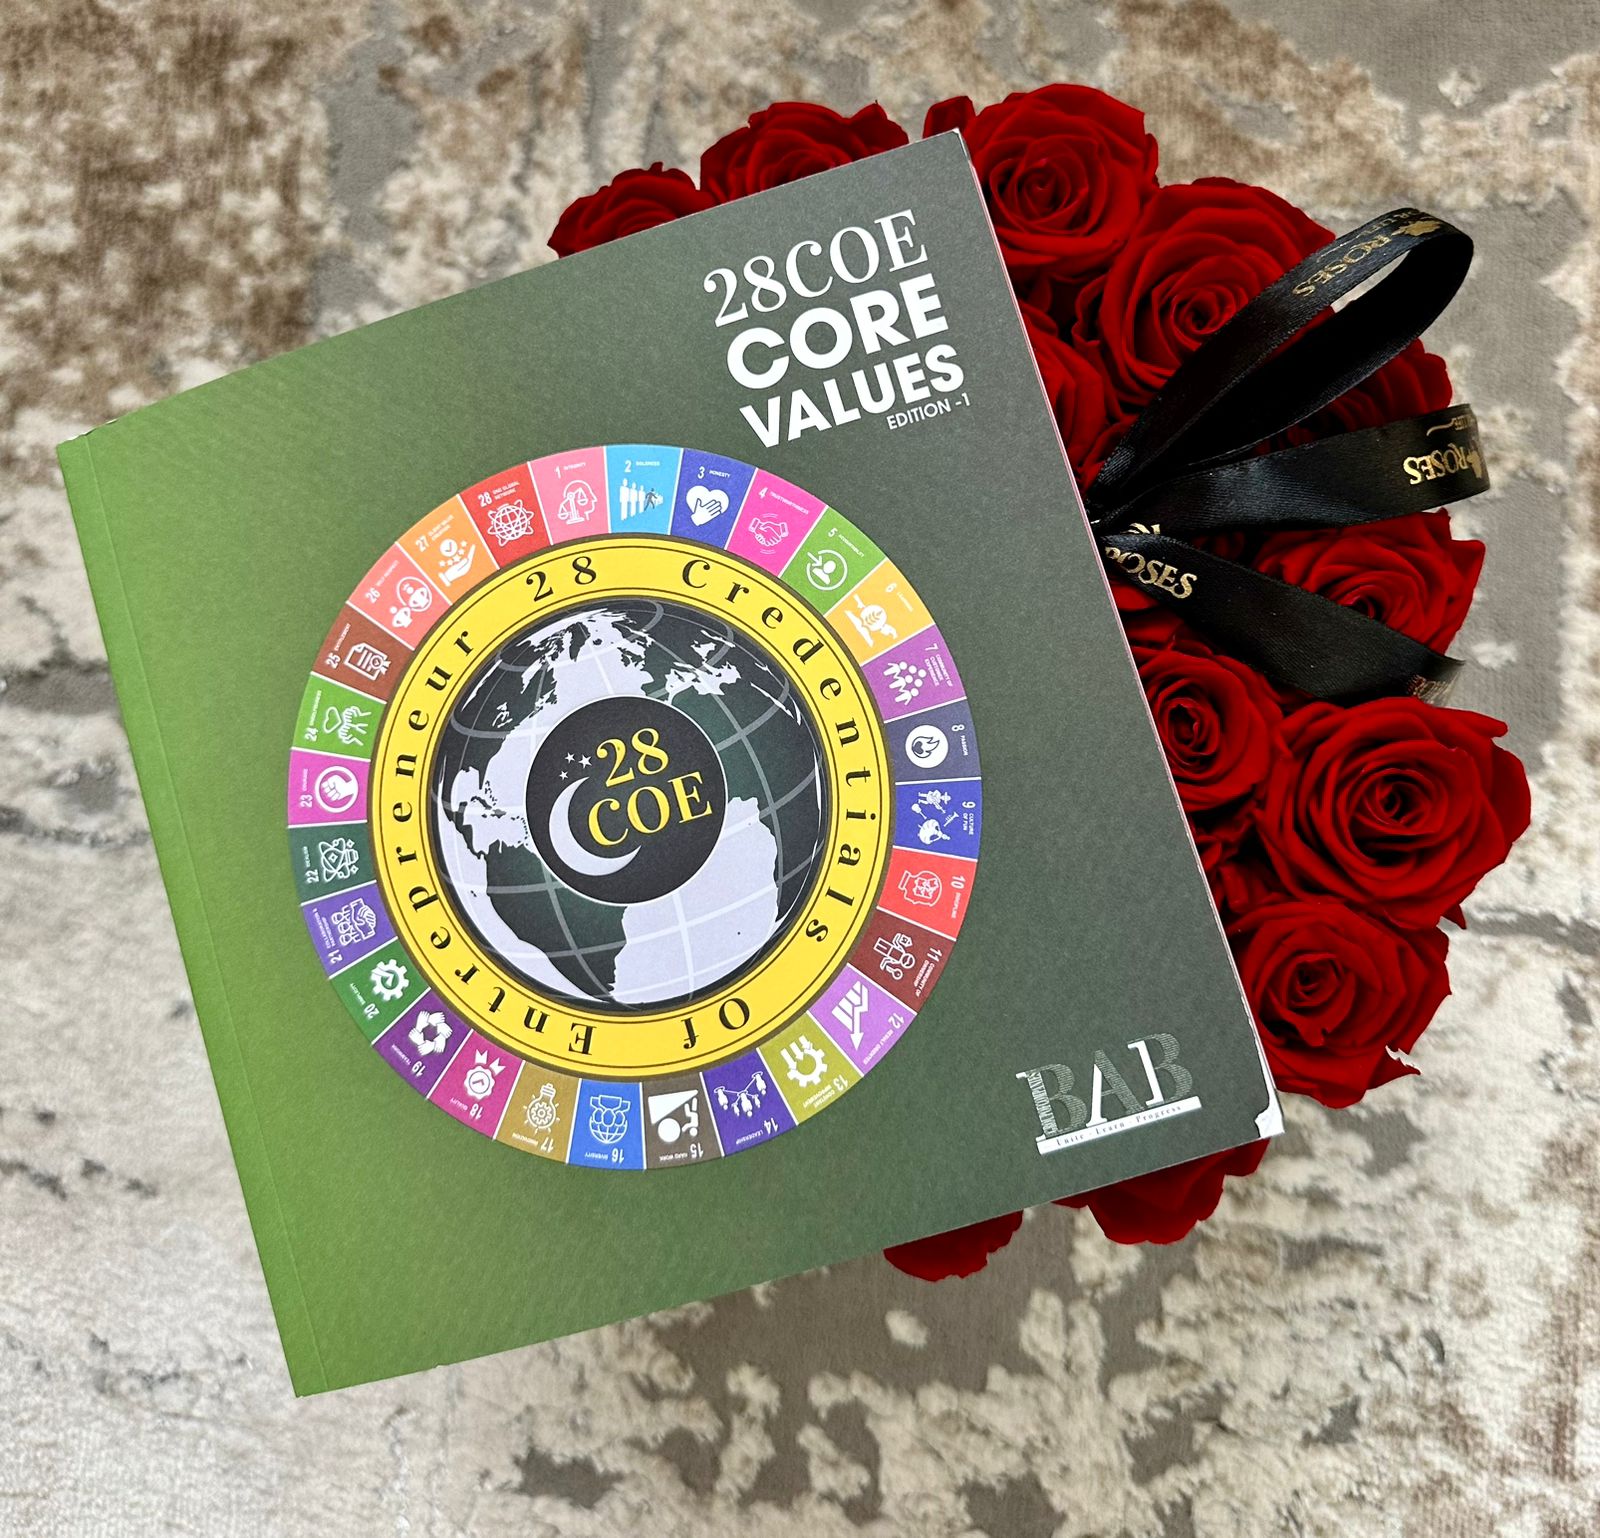 28COE Core Values-Edition1